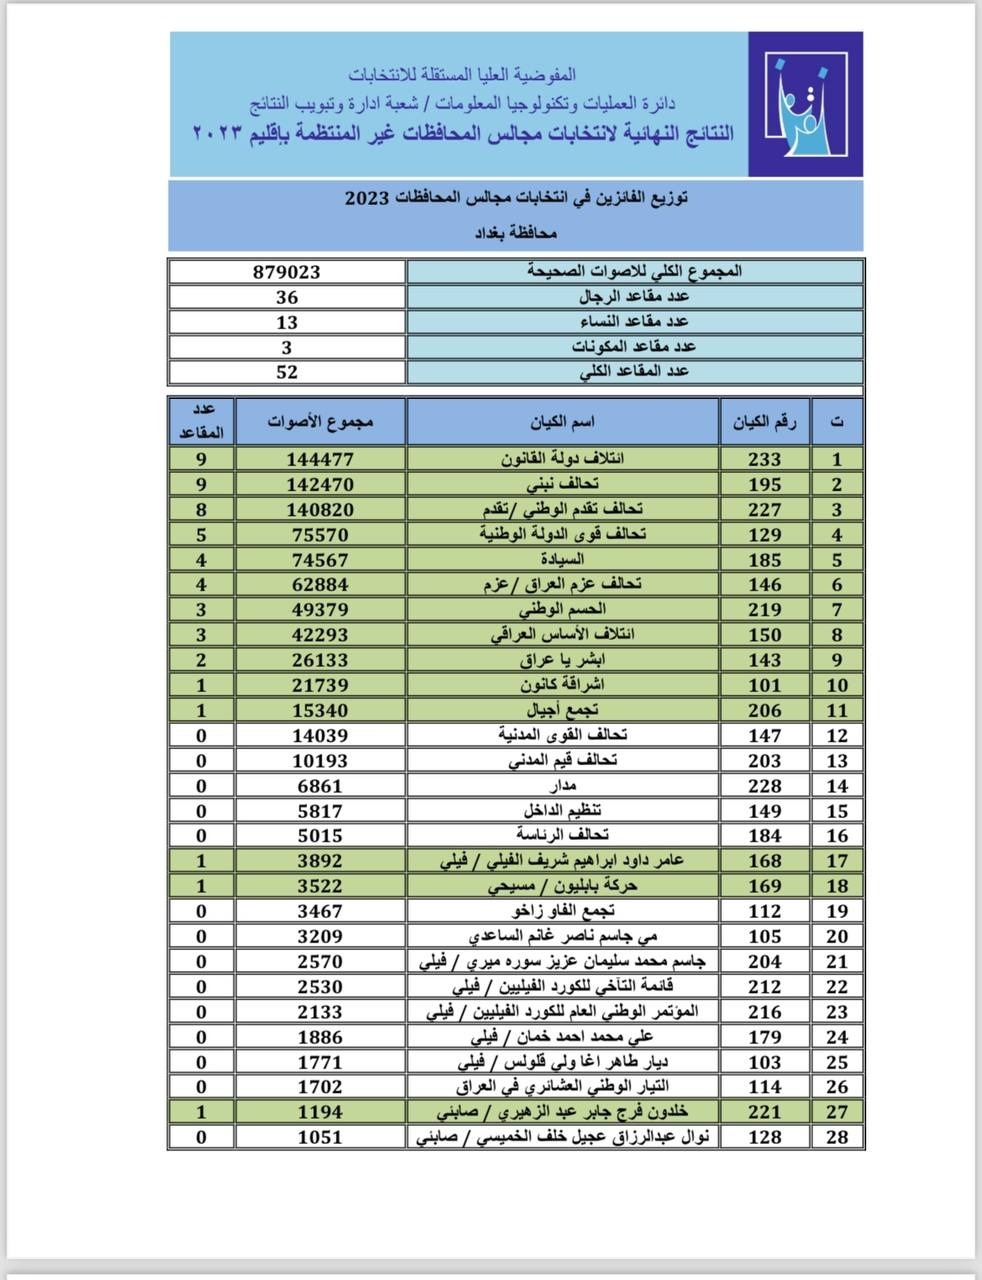 اسماء المرشحين الفائزين في العاصمة بغداد